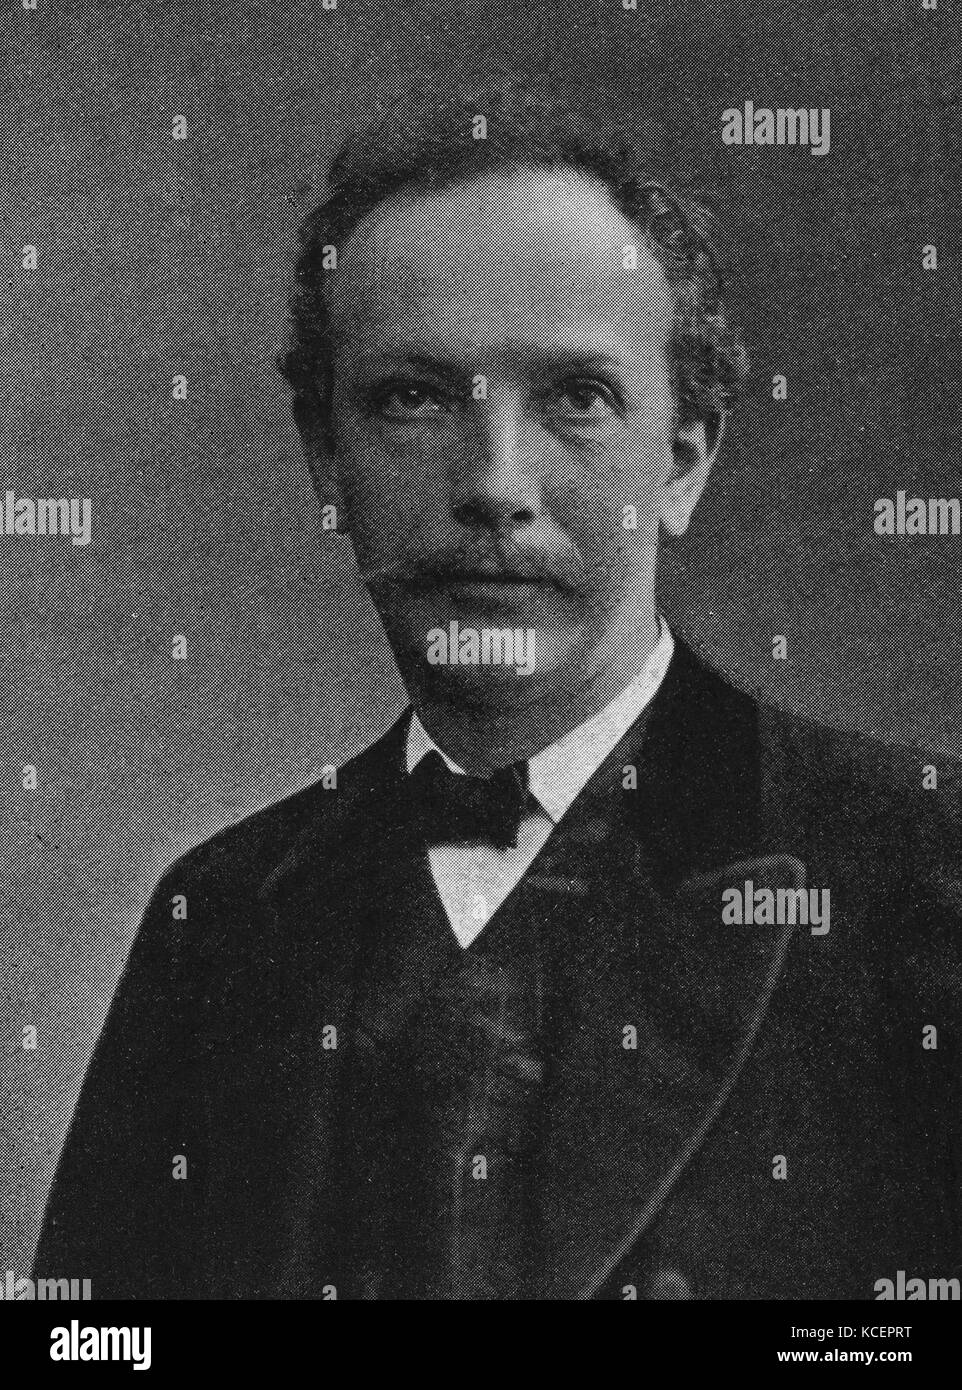 Foto von Richard Strauss (1864-1949), deutscher Komponist der Romantik und frühe moderne Ären. Vom 20. Jahrhundert Stockfoto